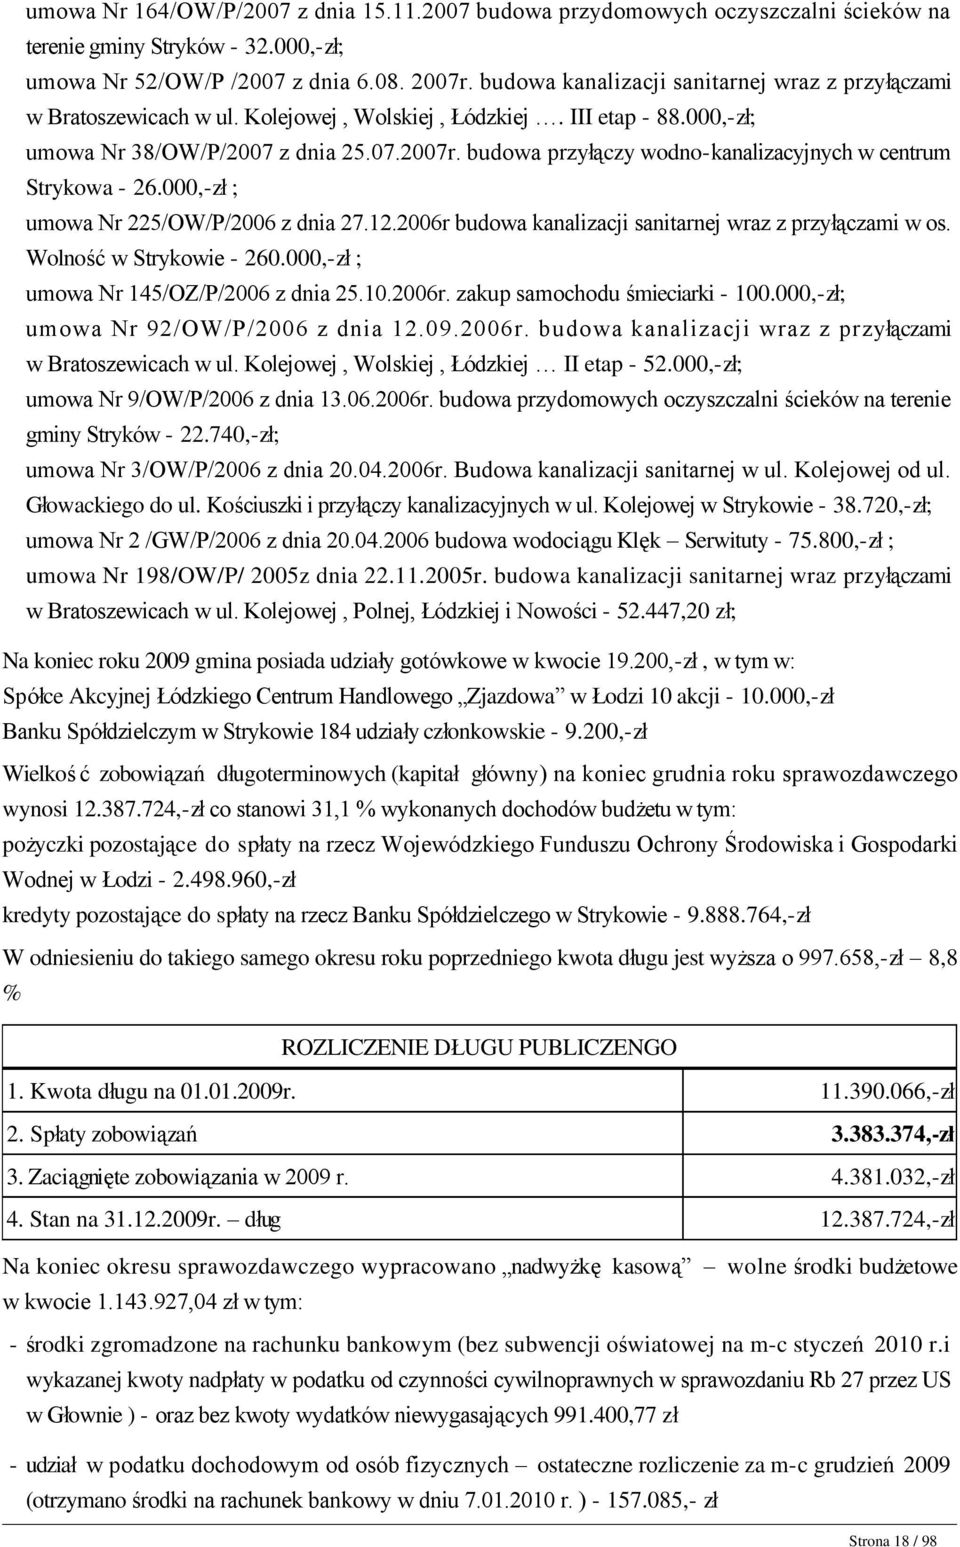 000,-zł; umowa Nr 38/OW/P/2007 z dnia 25.07.2007r. budowa przyłączy wodno-kanalizacyjnych w centrum Strykowa - 26.000,-zł ; umowa Nr 225/OW/P/2006 z dnia 27.12.